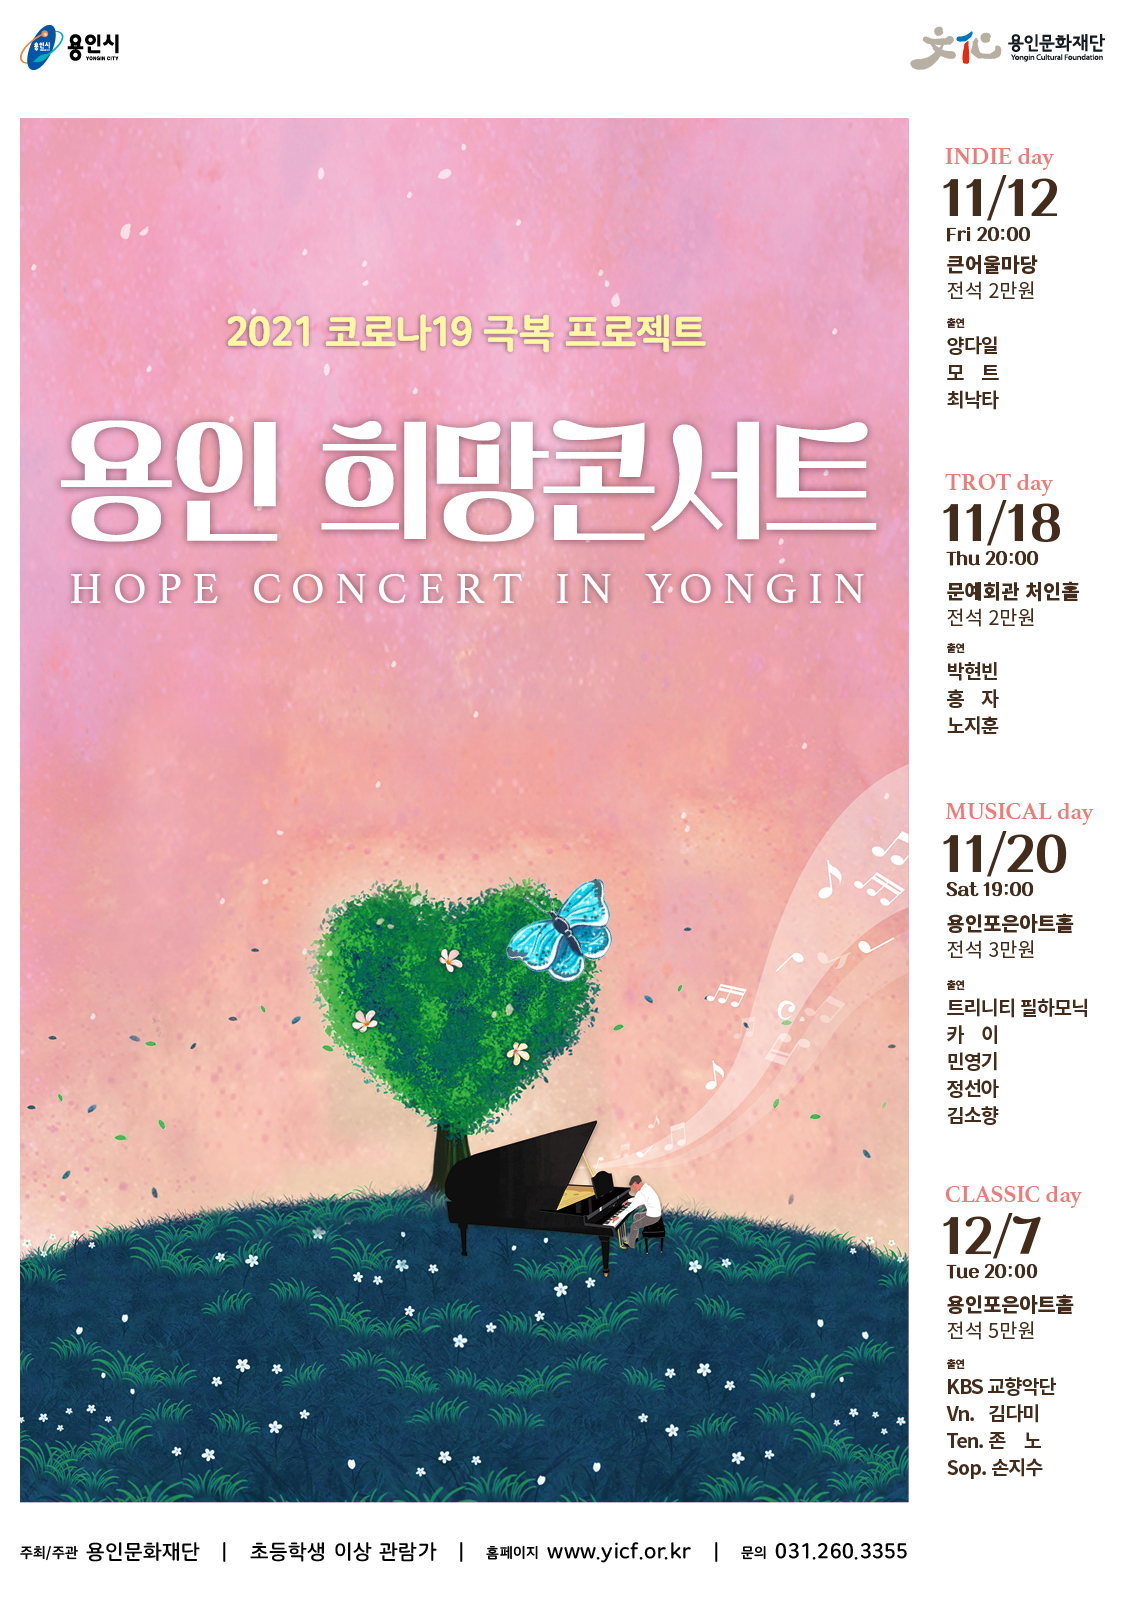 용인 희망콘서트 : MUSICAL day 홍보포스터